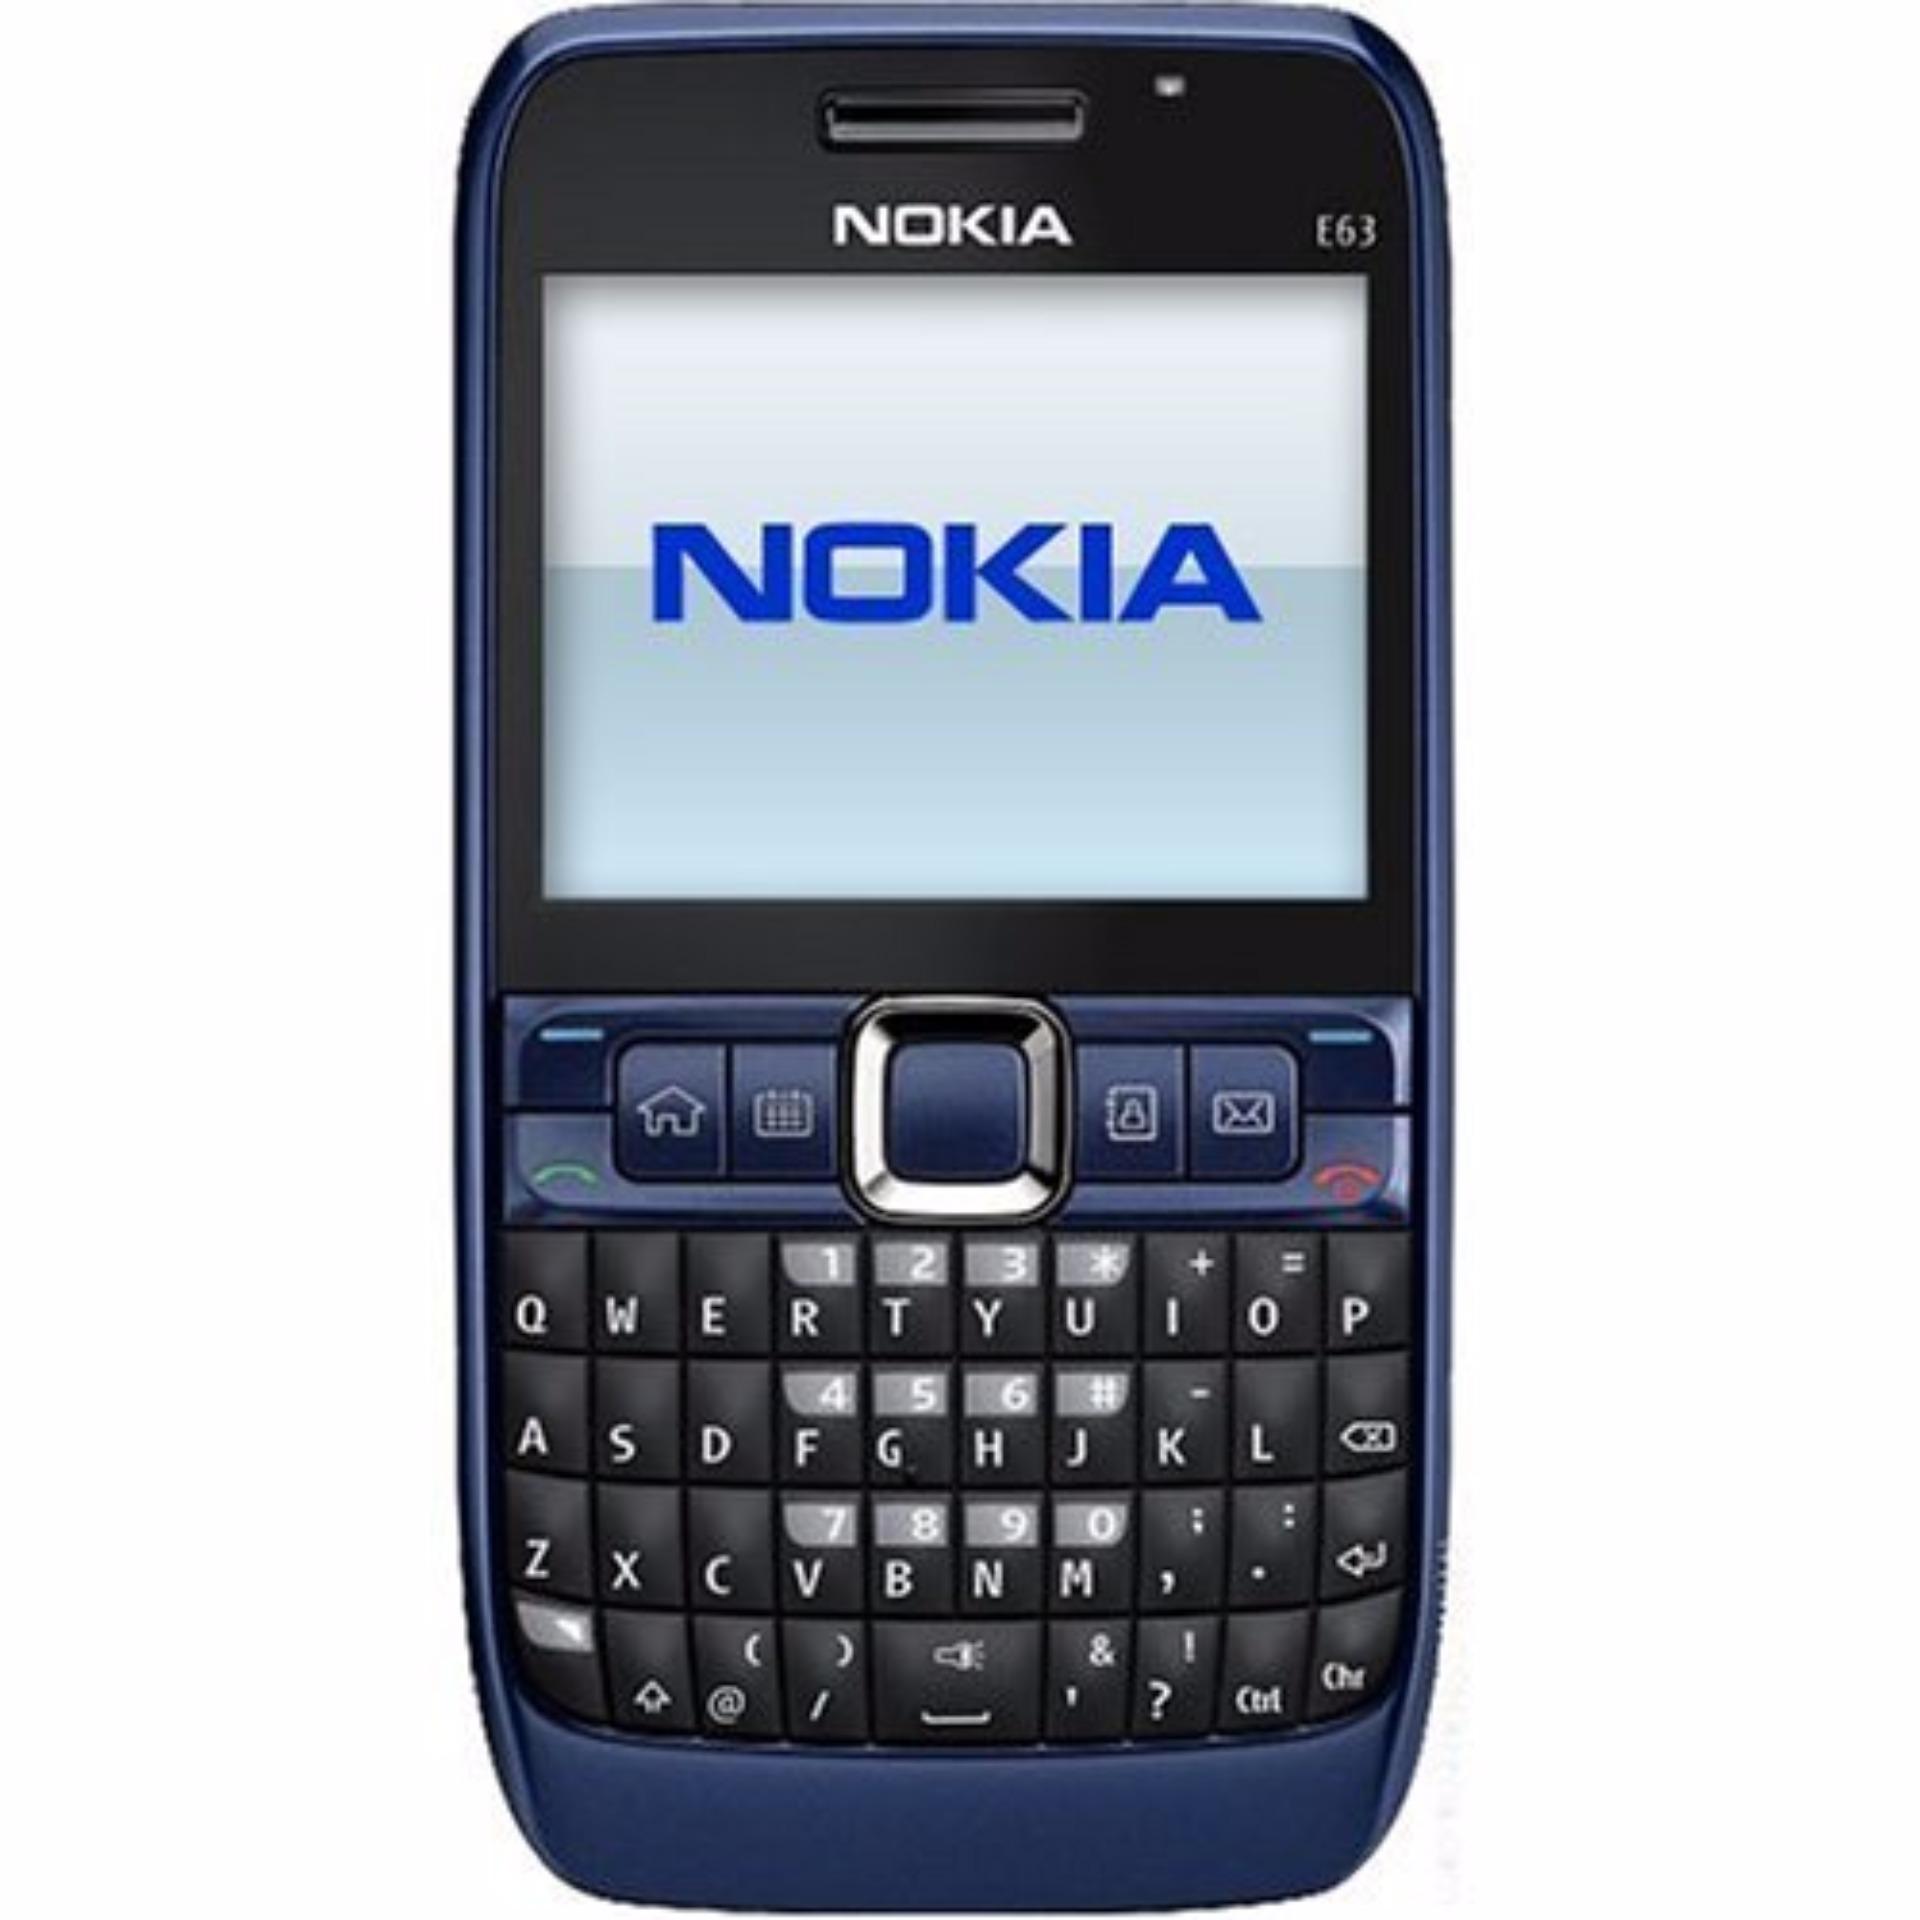 Nokia E63 - 3G UMTS - Biru - REKONDISI